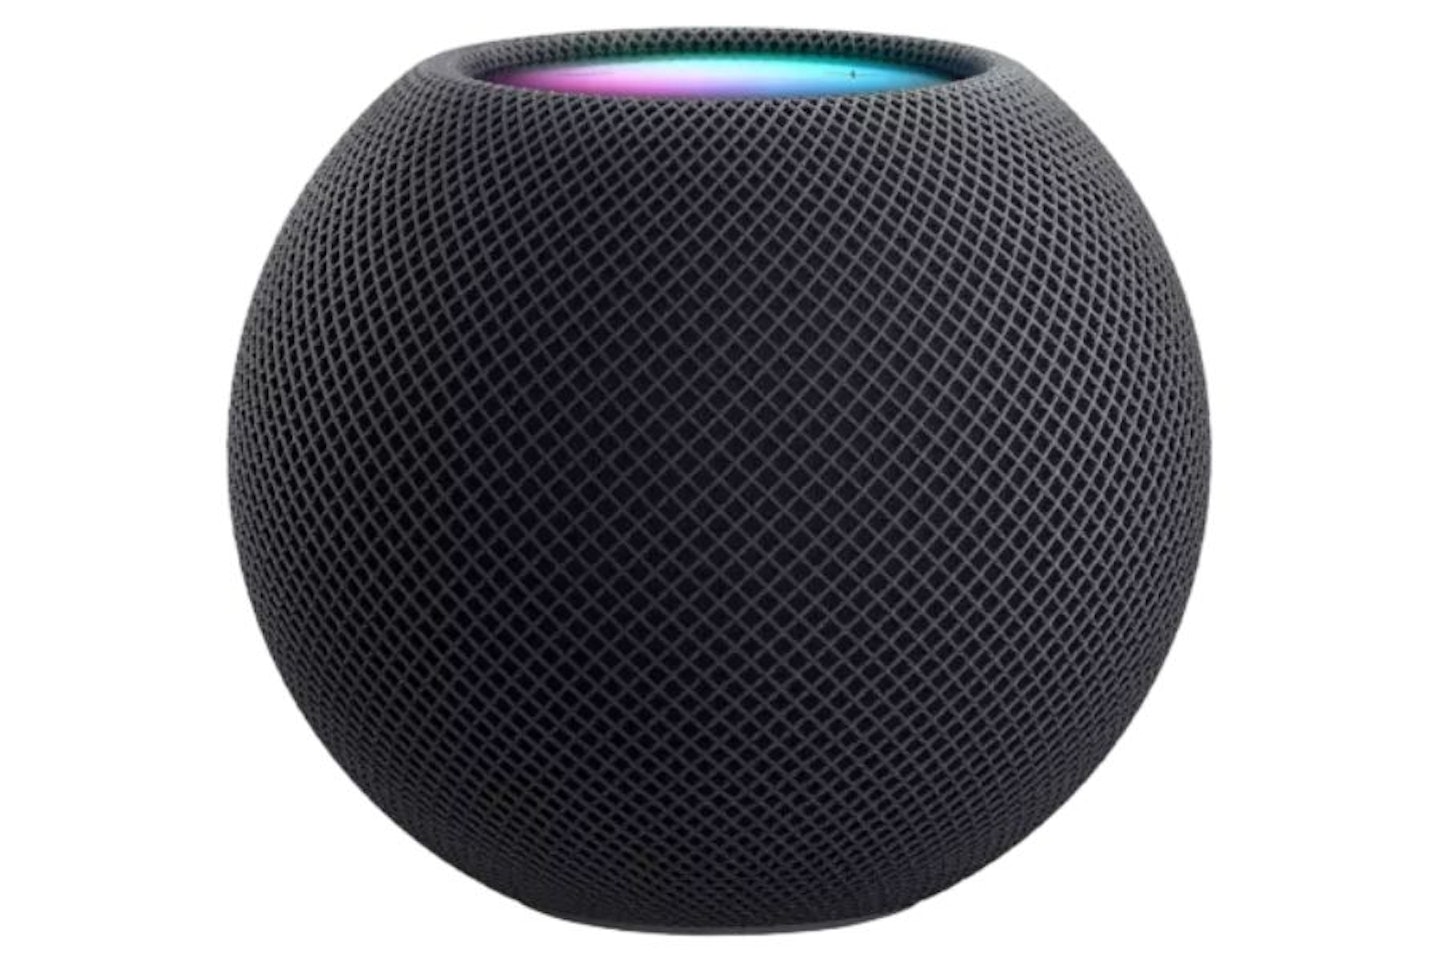 Apple Home Pod mini Smart Speaker